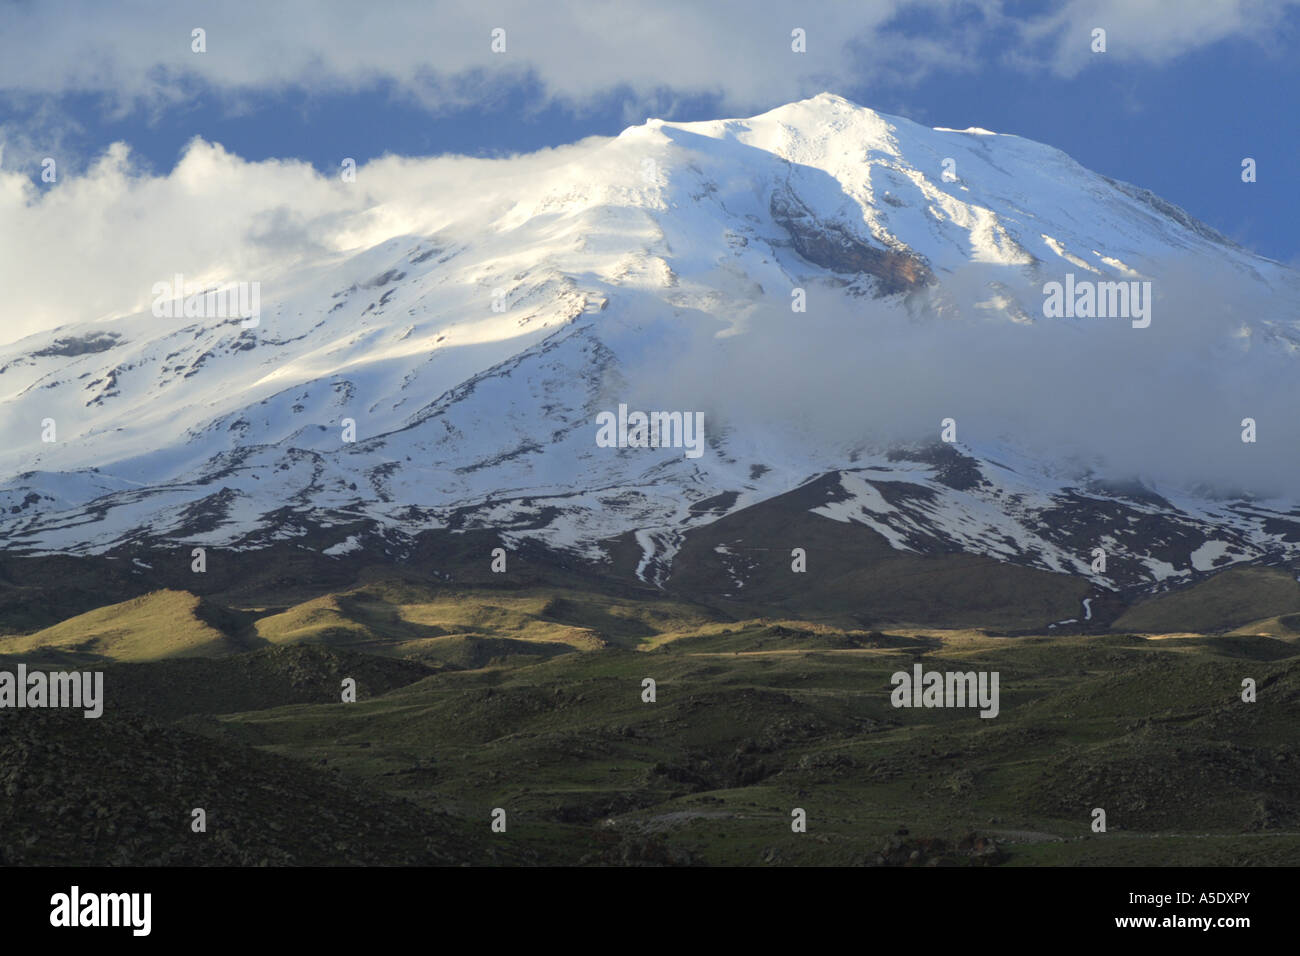 La montagne Ararat avec de la neige couvrant dans la lumière du soir, la Turquie, l'Anatolie, est de l'Anatolie, Dogubayzit Banque D'Images